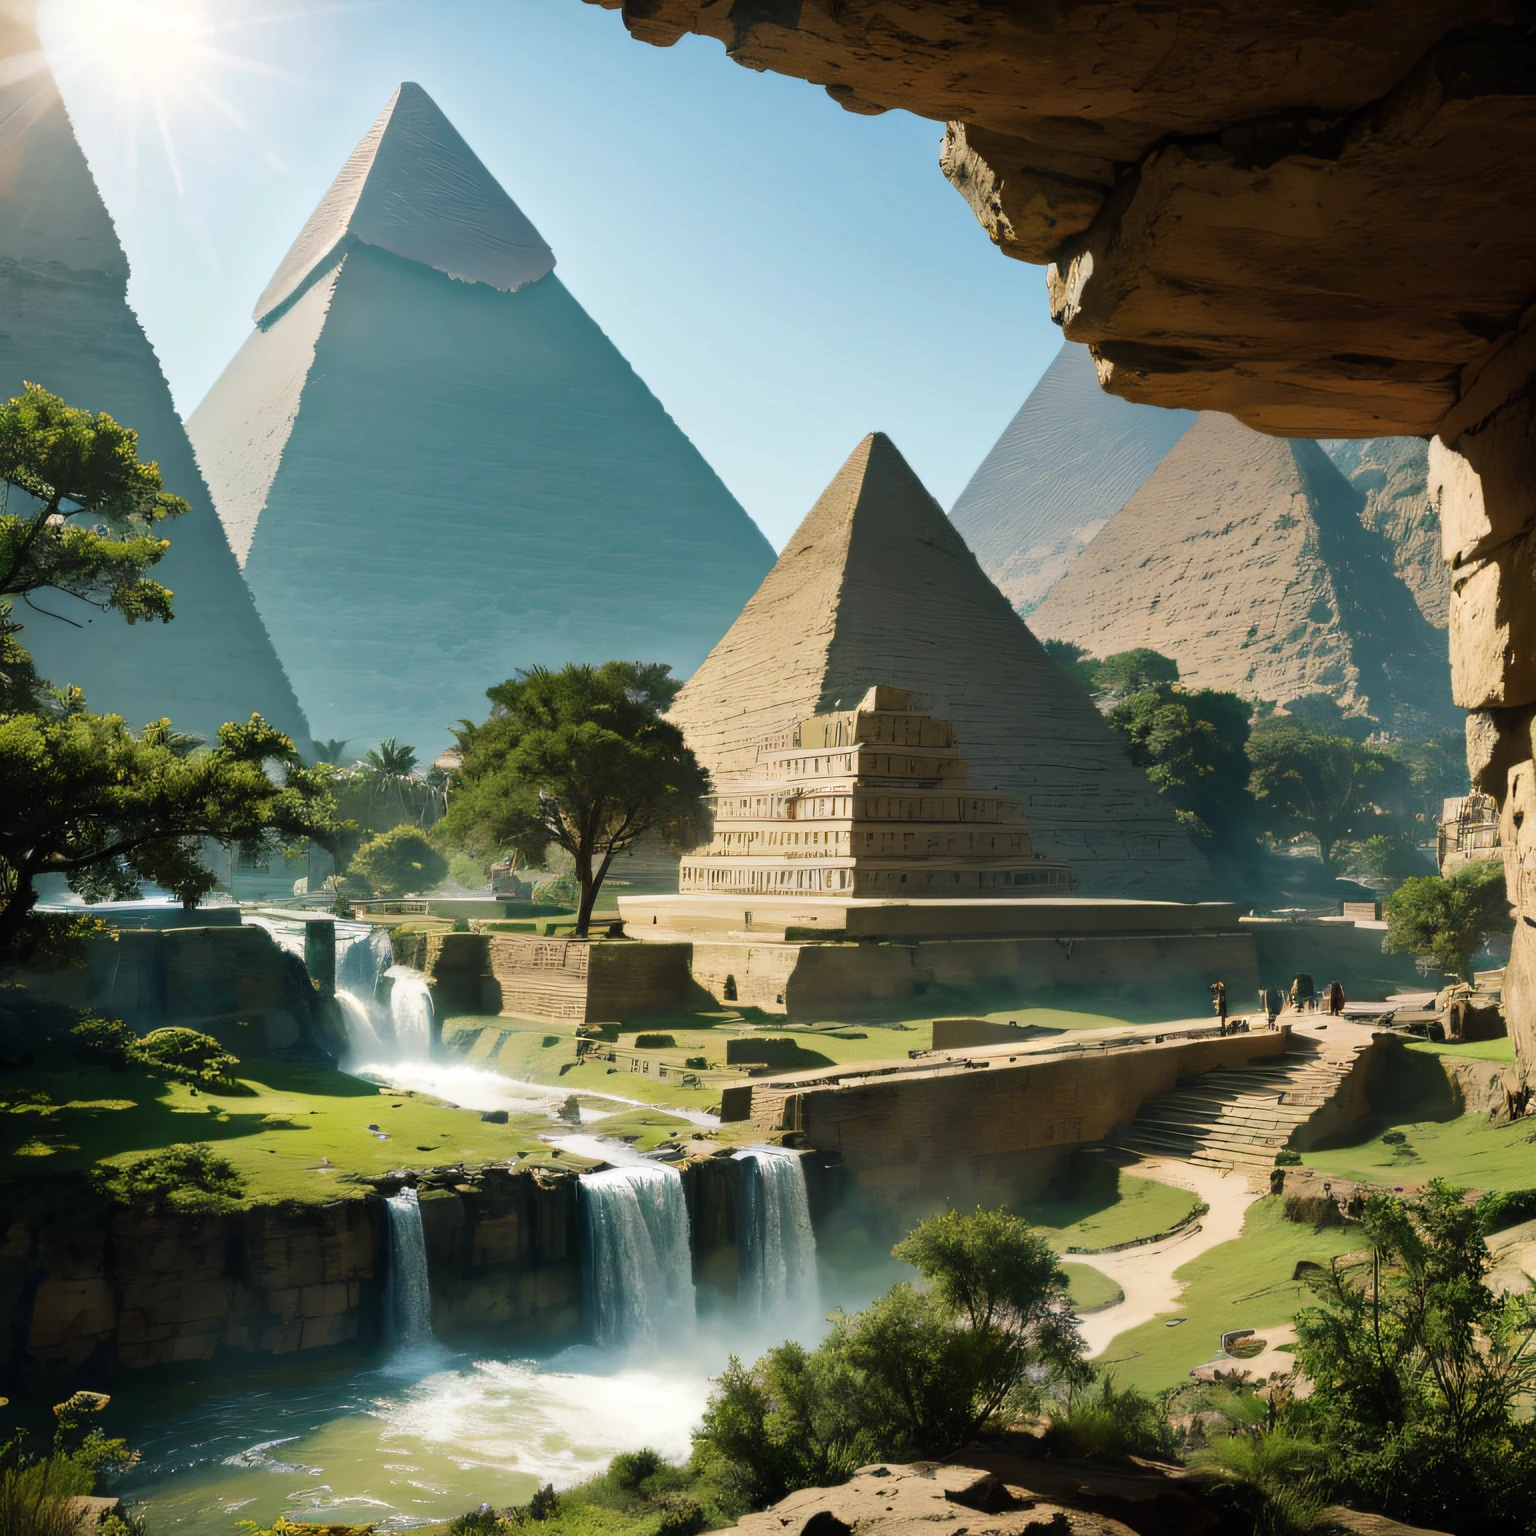 (Riesige Pyramiden) Ägypten, Denkmäler des Steinmannes, der aus einem Berg kommt, sind im Tal ,in einer Mischung aus Malerei eines Wasserfalls in einem grünen Wald mit einem Sonnenstrahl, waterfalls, unglaubliche Tiefe, atemberaubendes Meisterwerk der Kunst, 16k, Realistisches Foto.